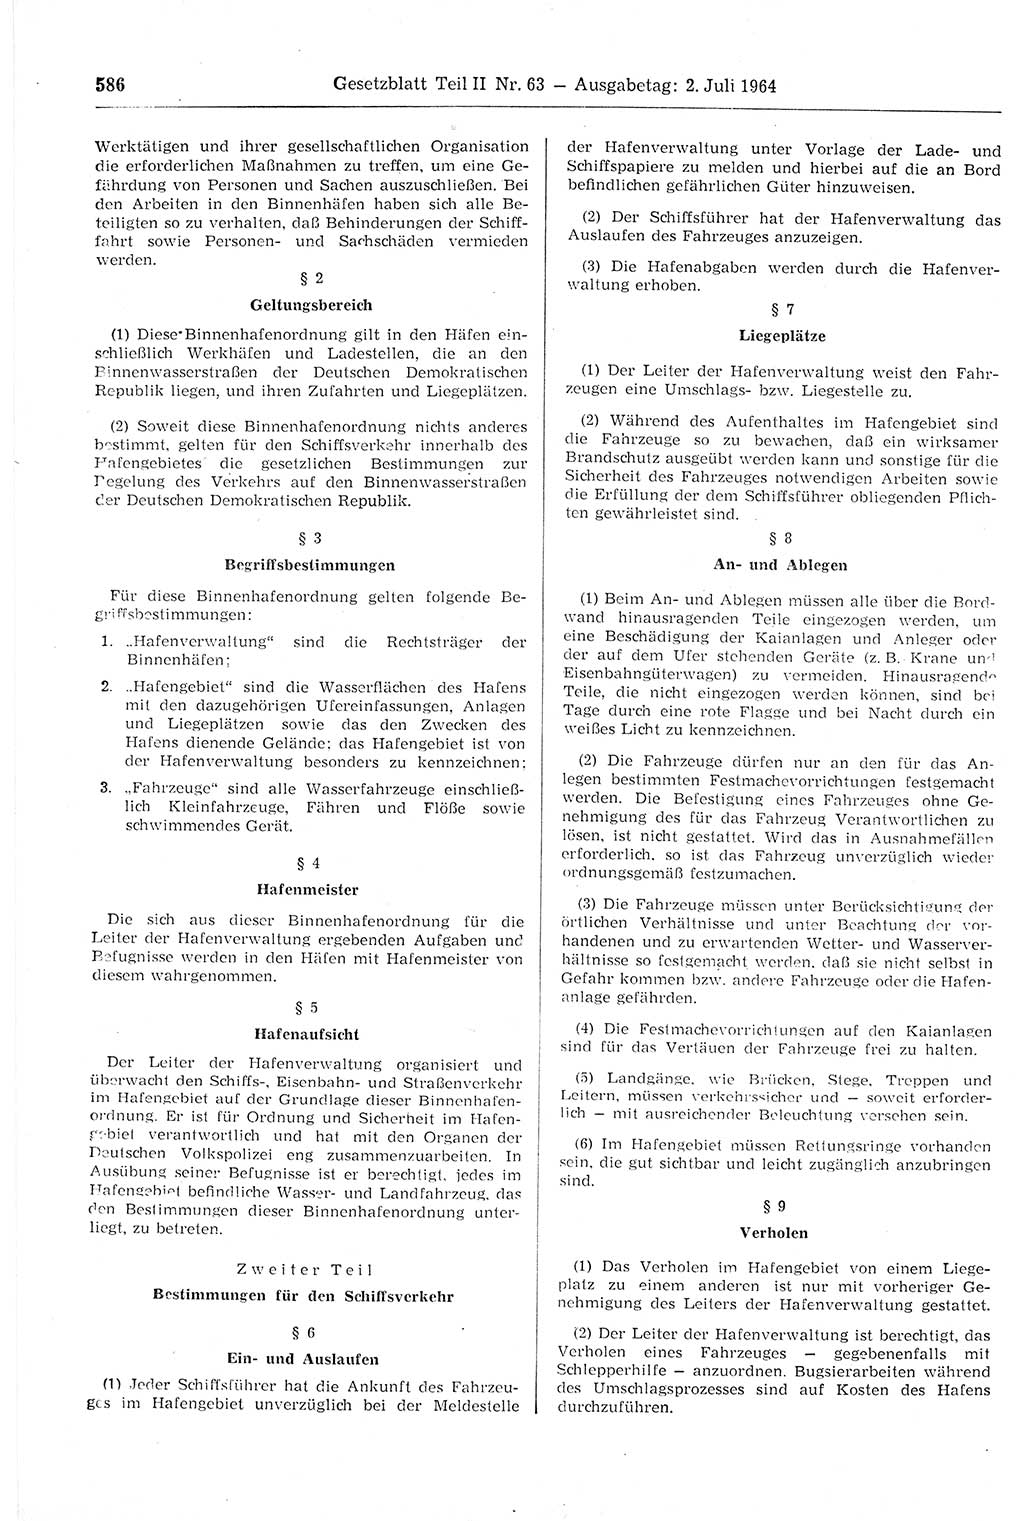 Gesetzblatt (GBl.) der Deutschen Demokratischen Republik (DDR) Teil ⅠⅠ 1964, Seite 586 (GBl. DDR ⅠⅠ 1964, S. 586)